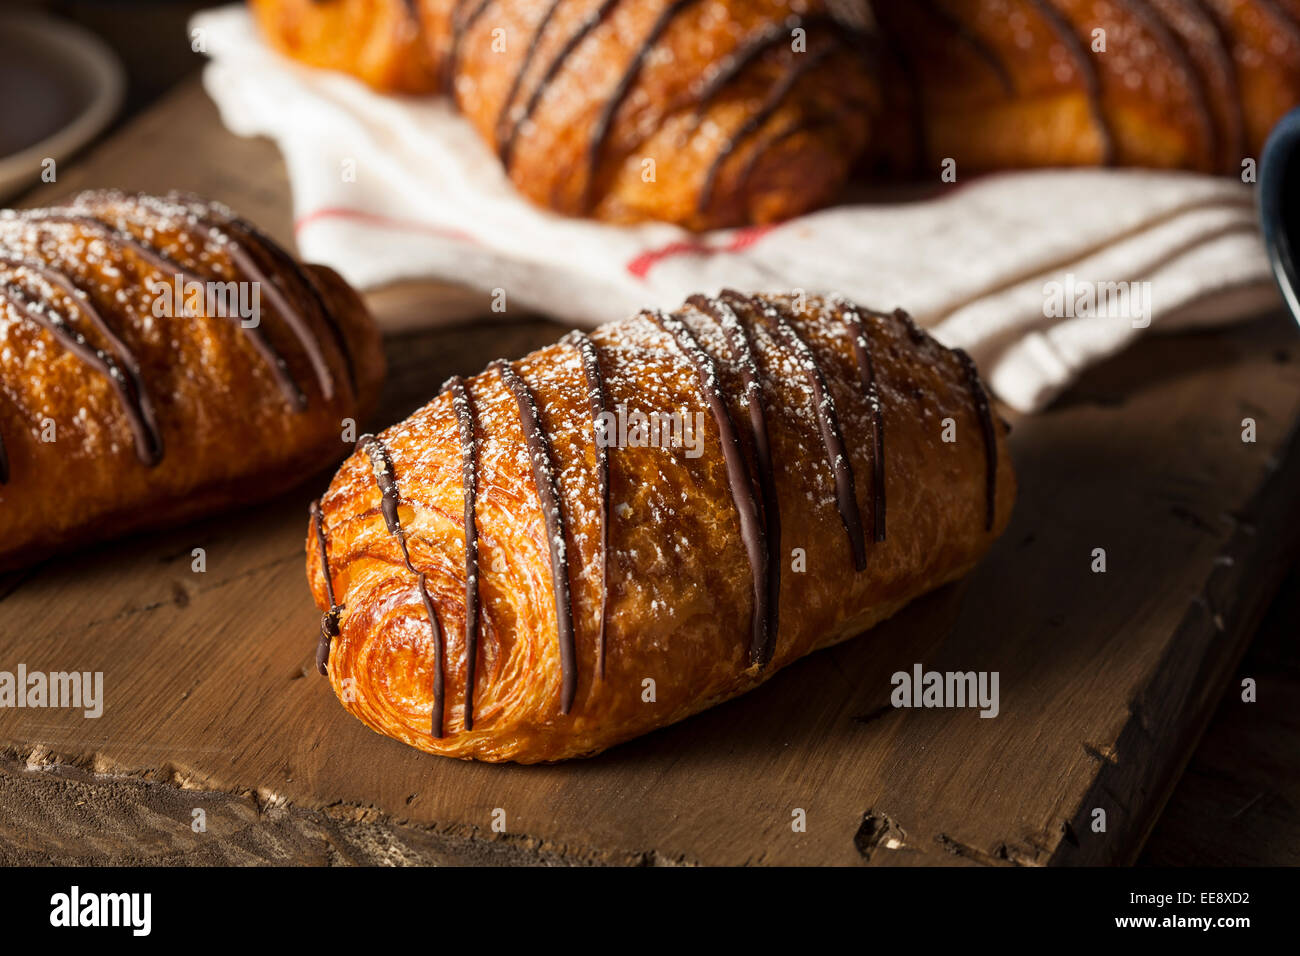 Croissant de chocolate caseras pastel con azúcar en polvo Foto de stock